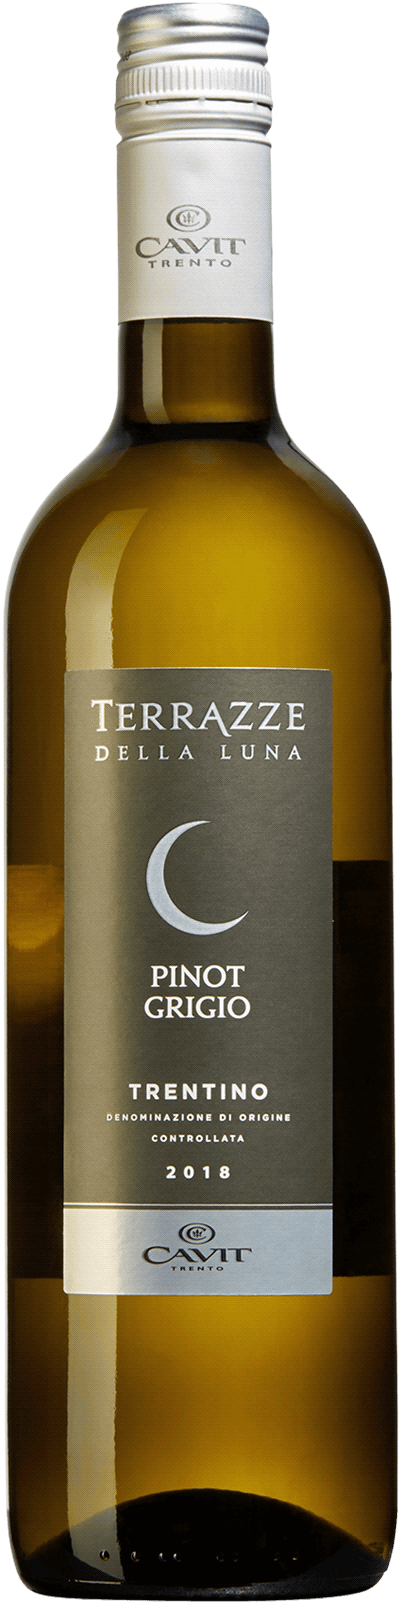 Terrazze Della Luna Pinot Grigio